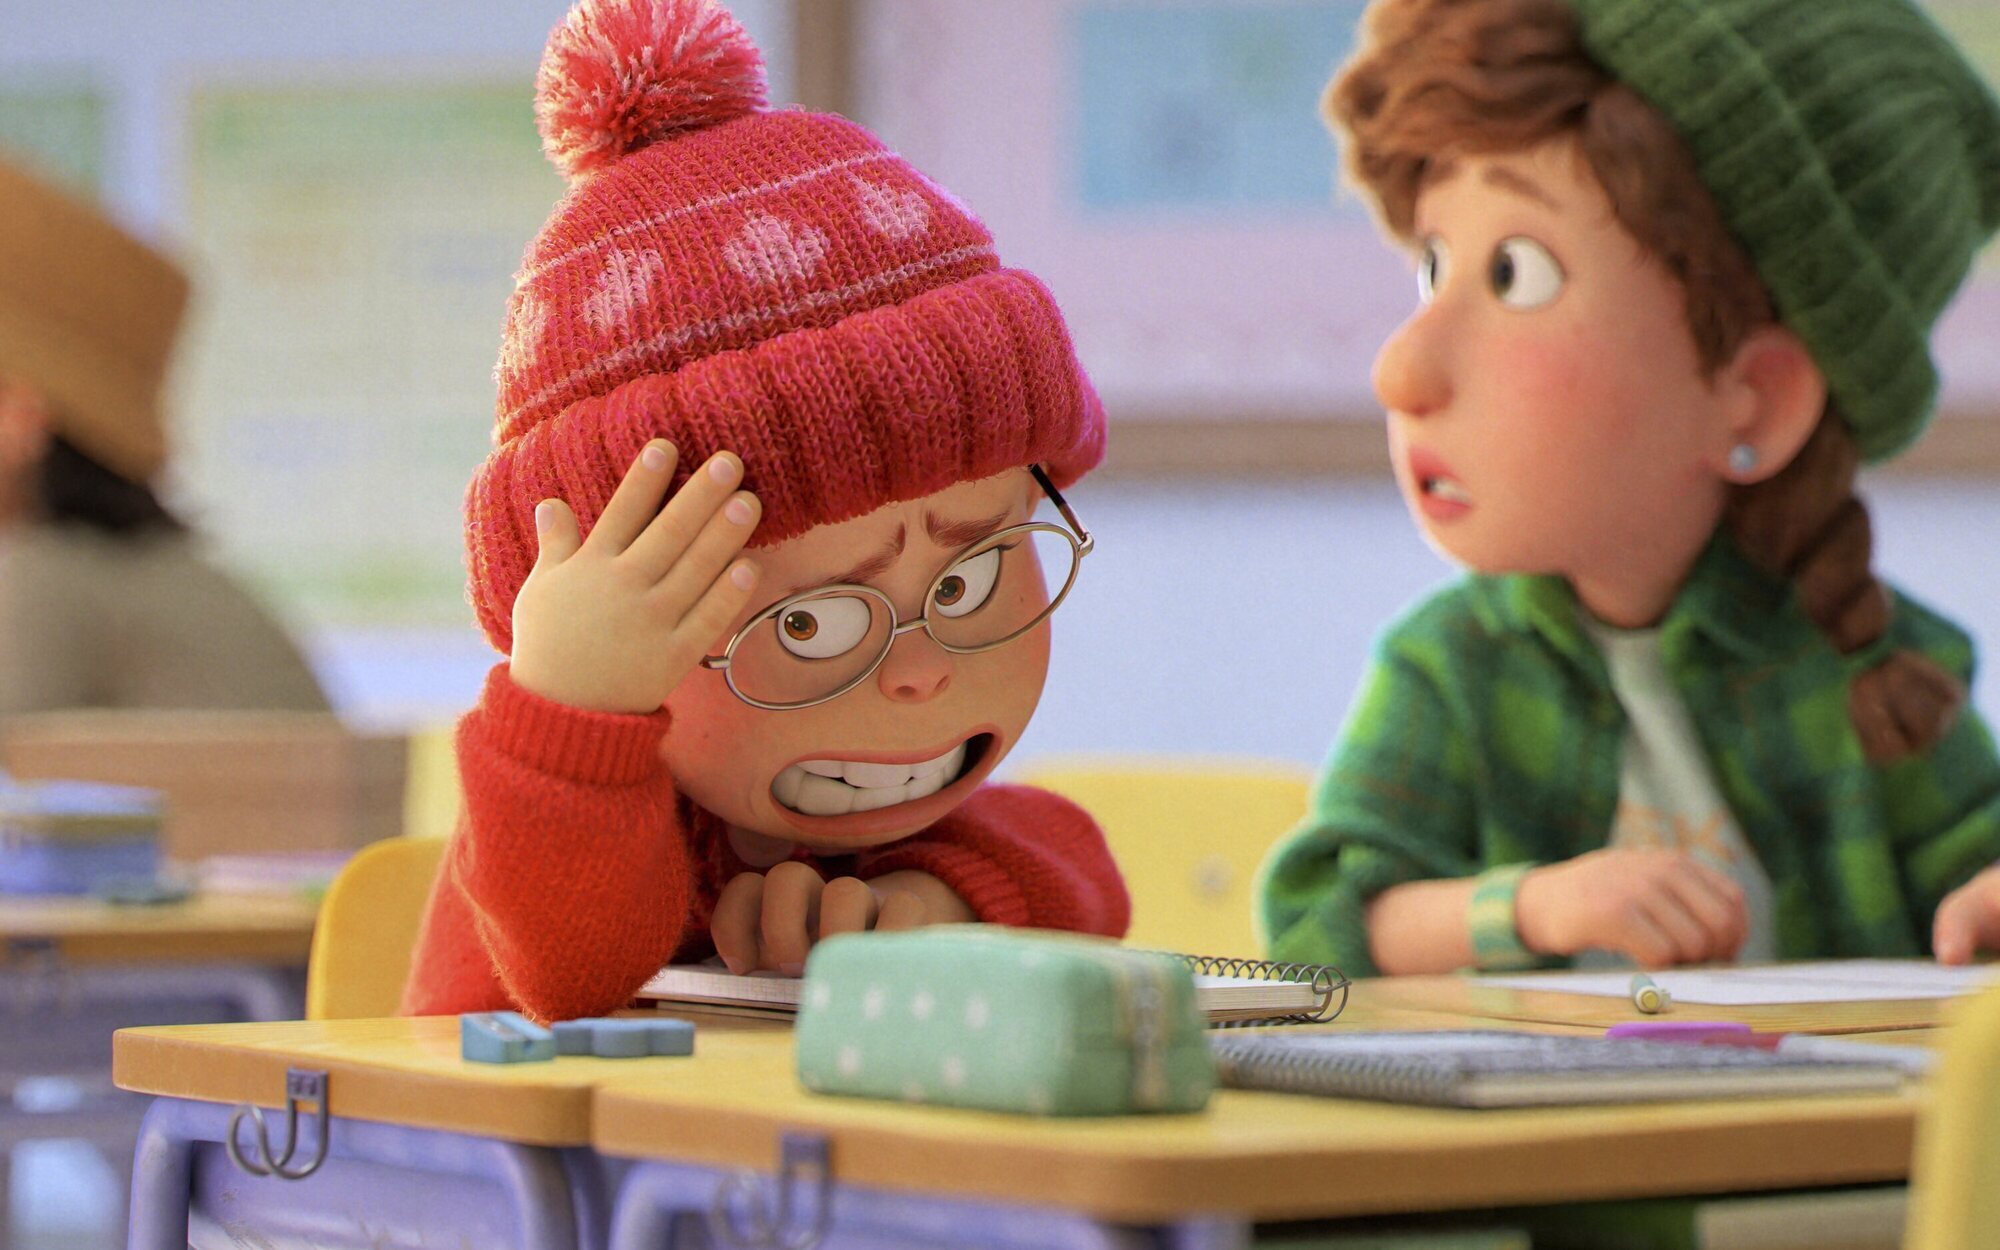 La nueva película de Pixar, "Red", también se estrenará directamente en Disney+